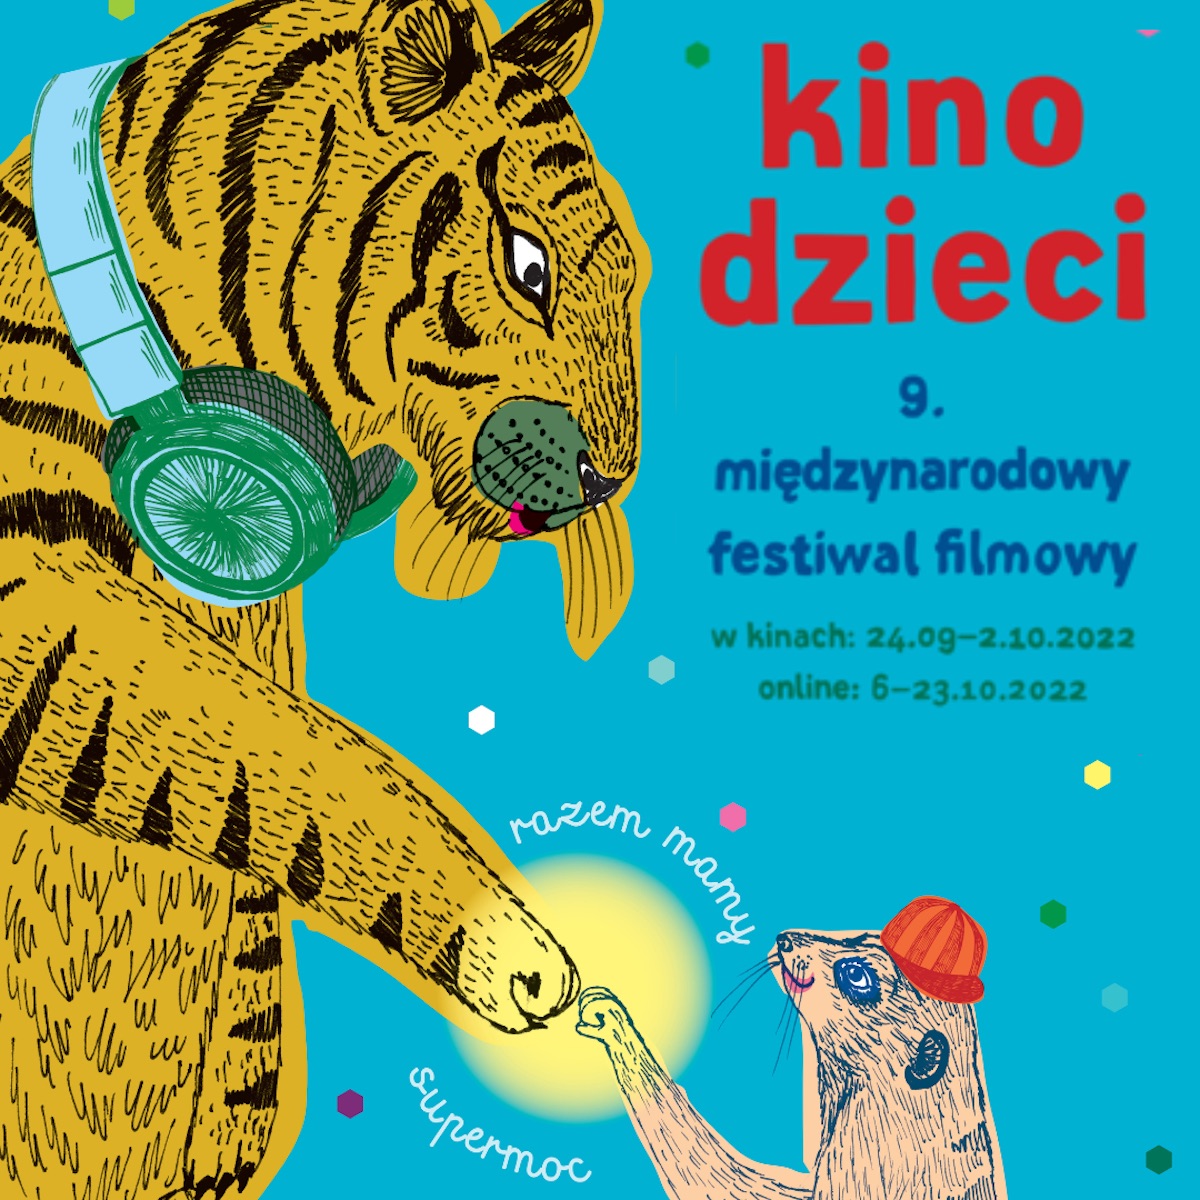 Grafika promująca festiwal Kino Dzieci. Rysunek przedstawia tygrysa witającego się z mniejszym ssakiem, na niebieskim tle.